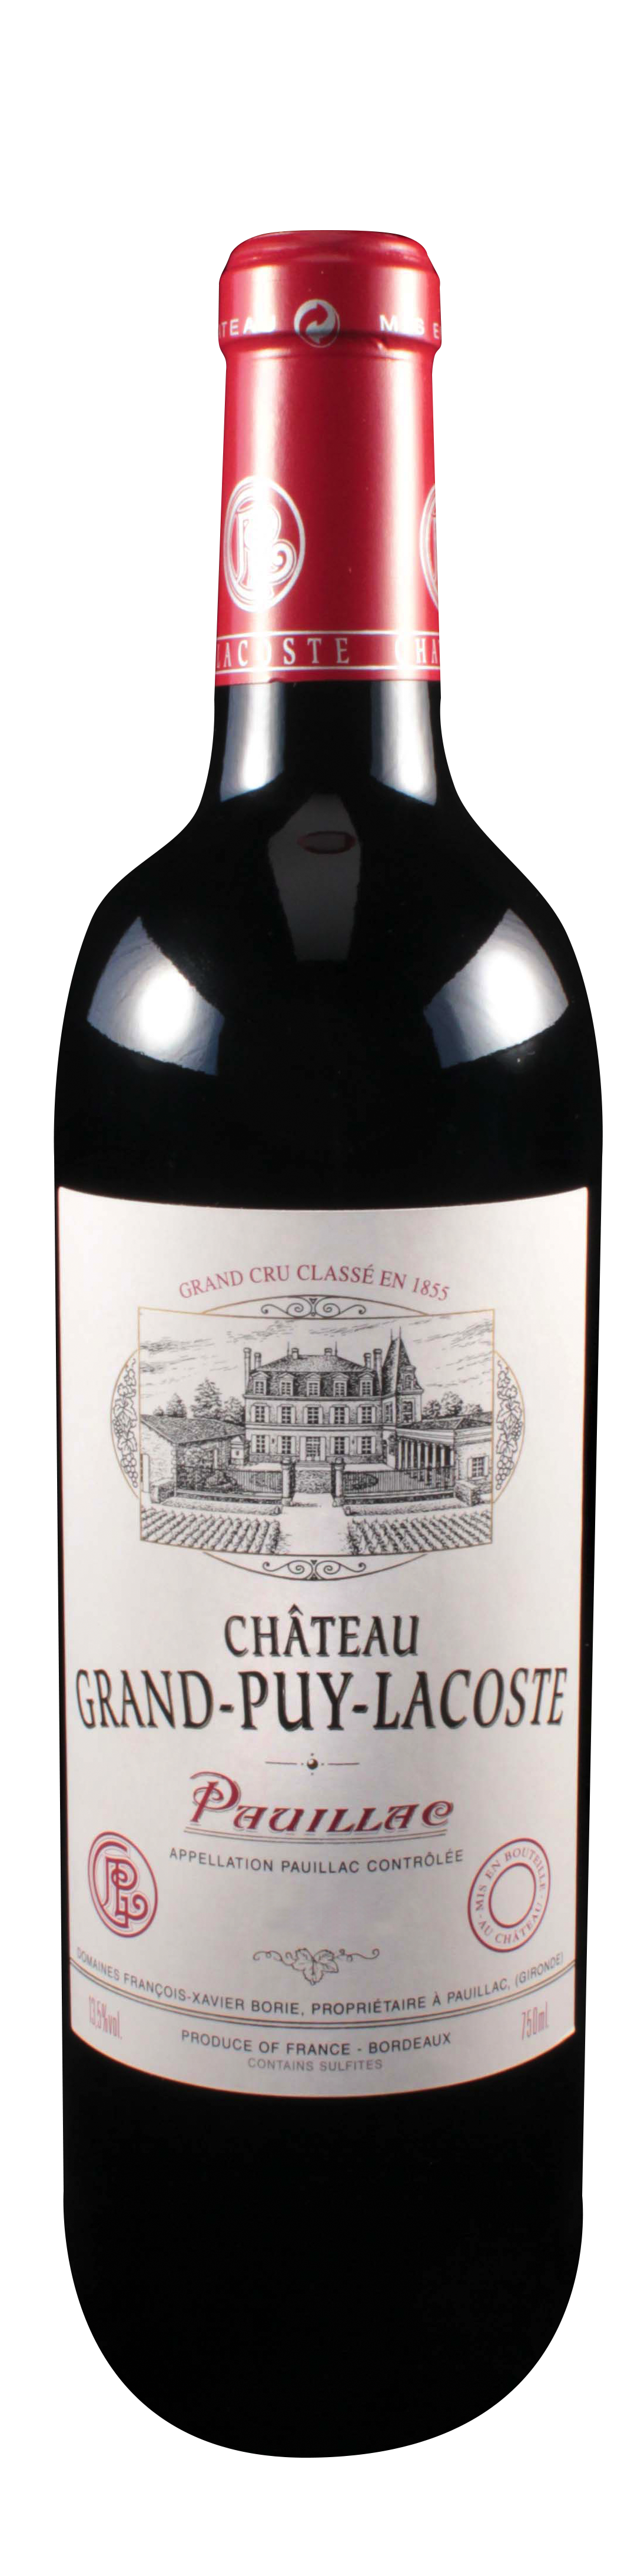 Bottle shot of 2008 Château Grand Puy Lacoste, 5ème Cru Pauillac